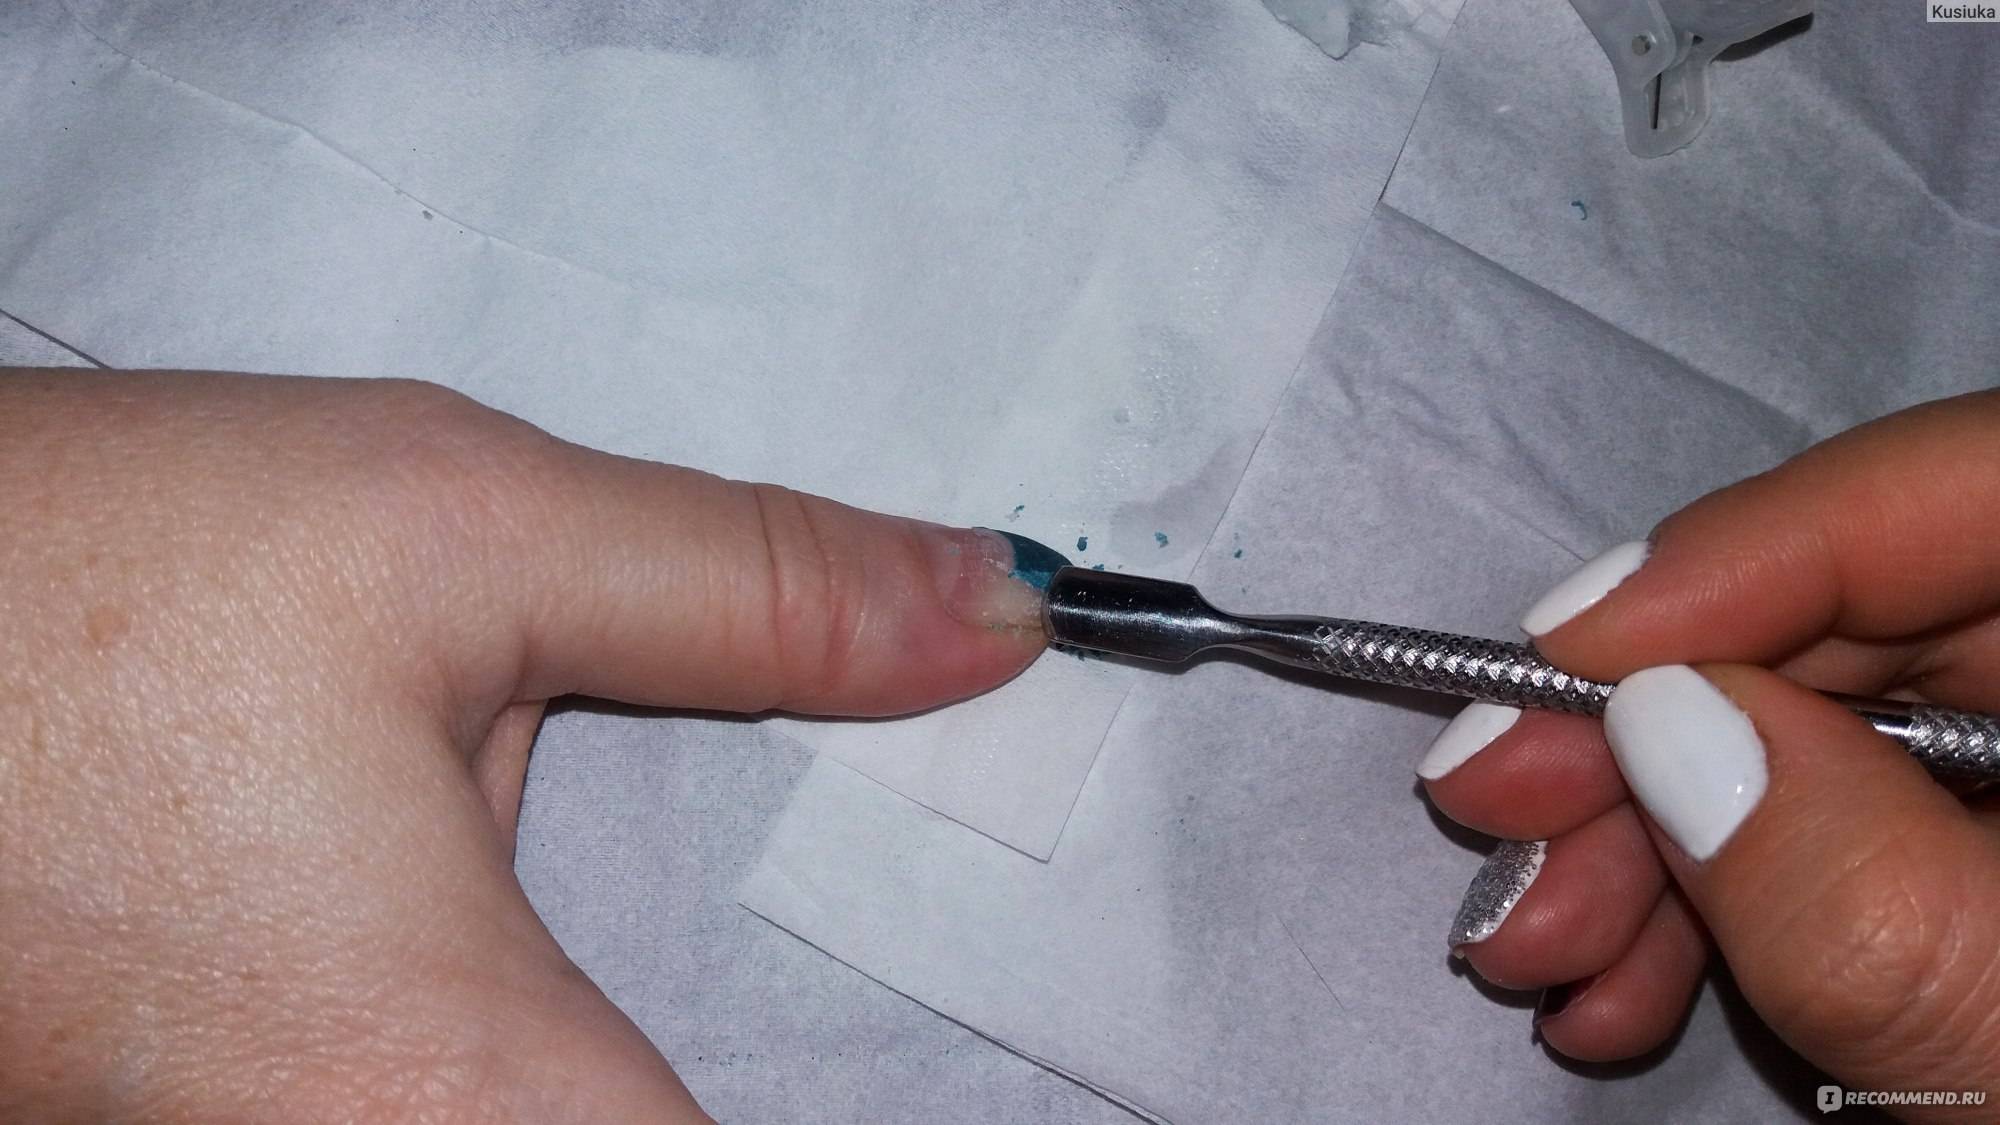 Как снять нарощенные ногти в домашних условиях без вреда | quclub.ru